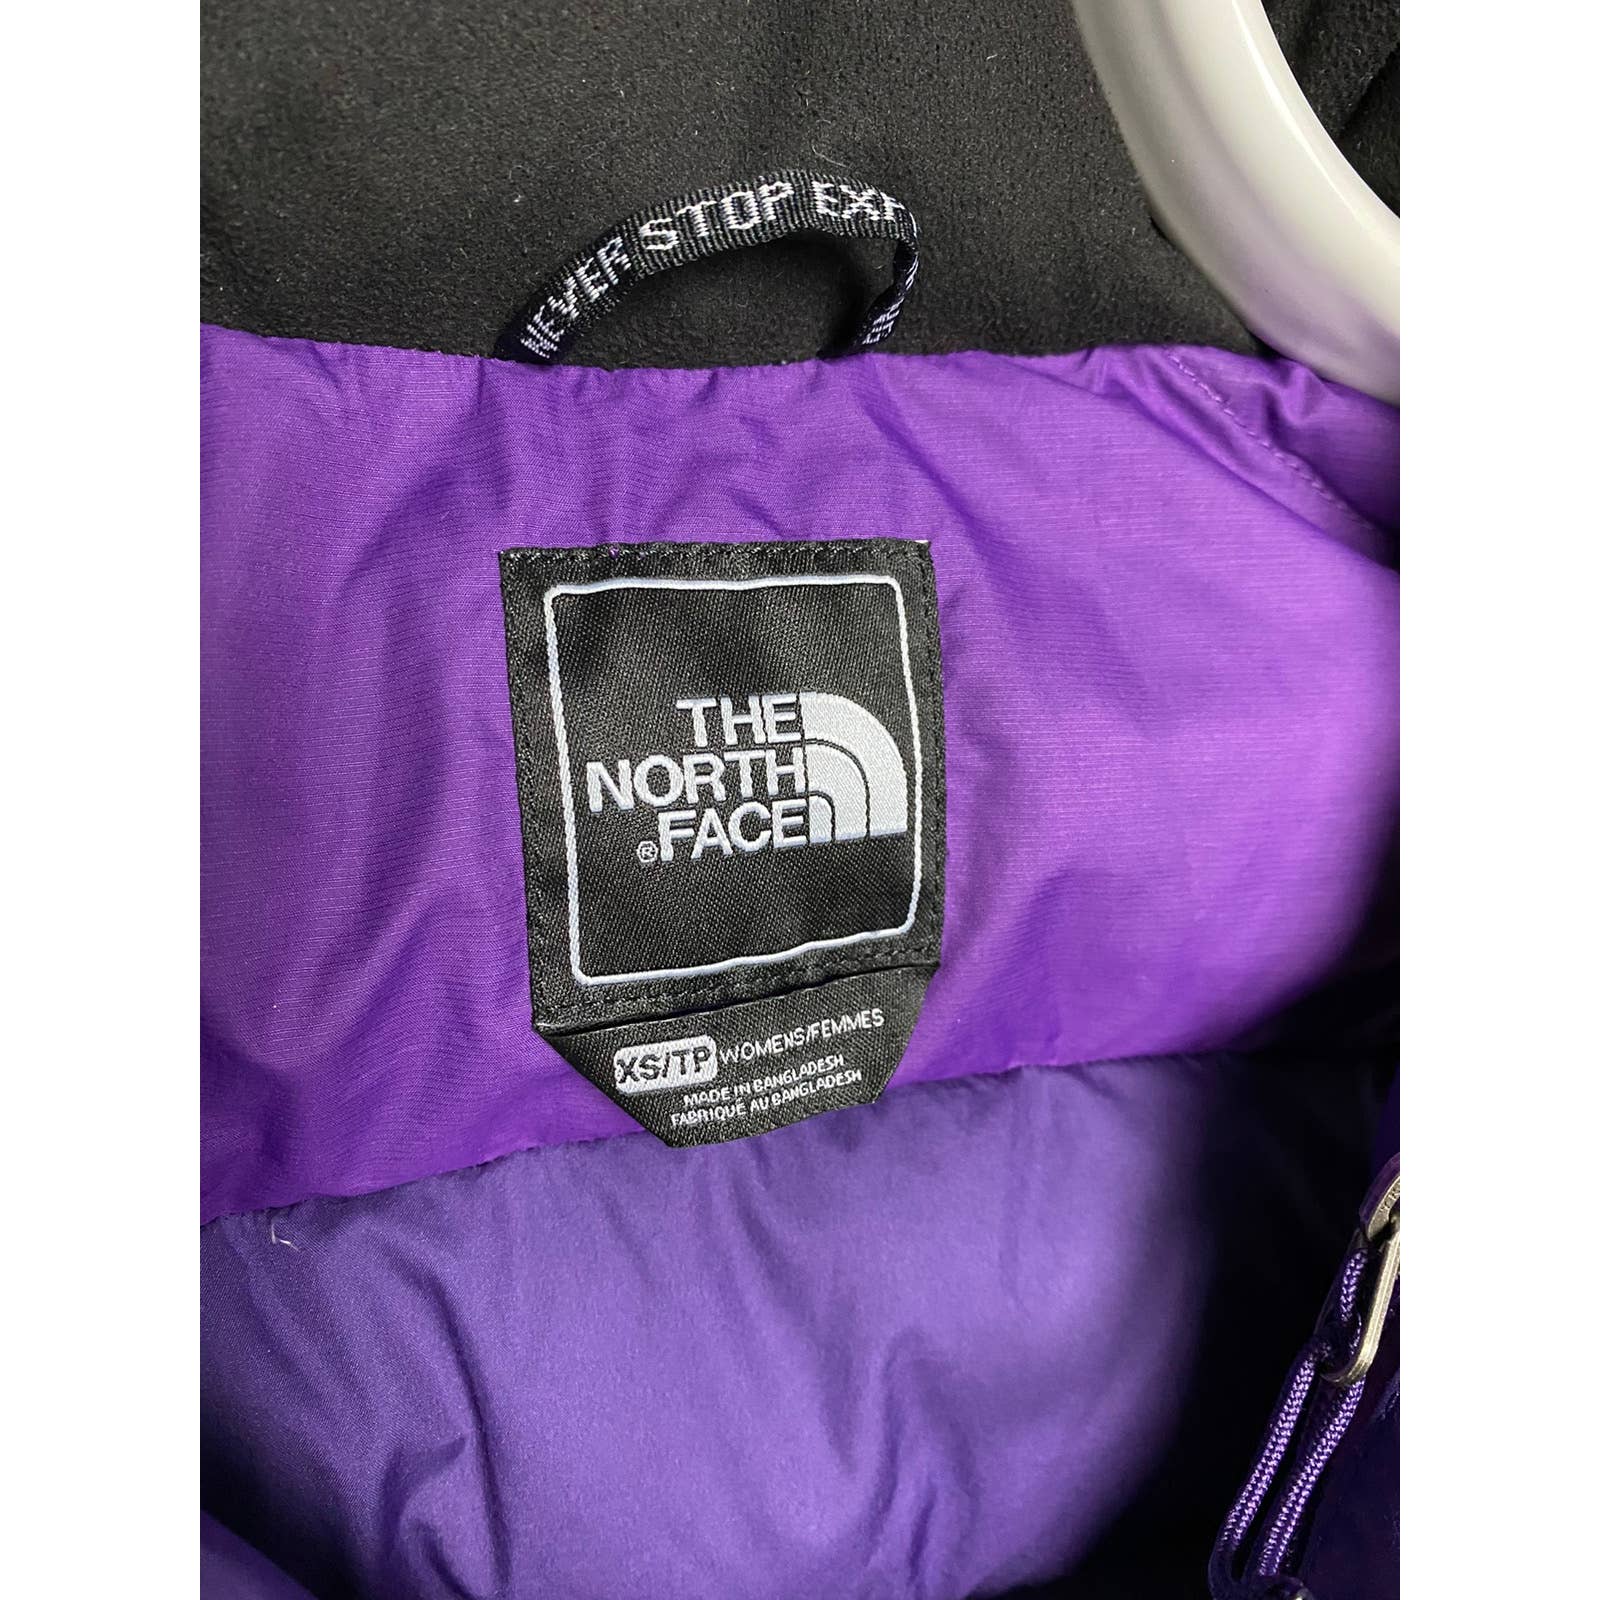 VESTE TAMPON VINTAGE « The North Face » 700 duvet nupste violet EUR 175,67  - PicClick FR